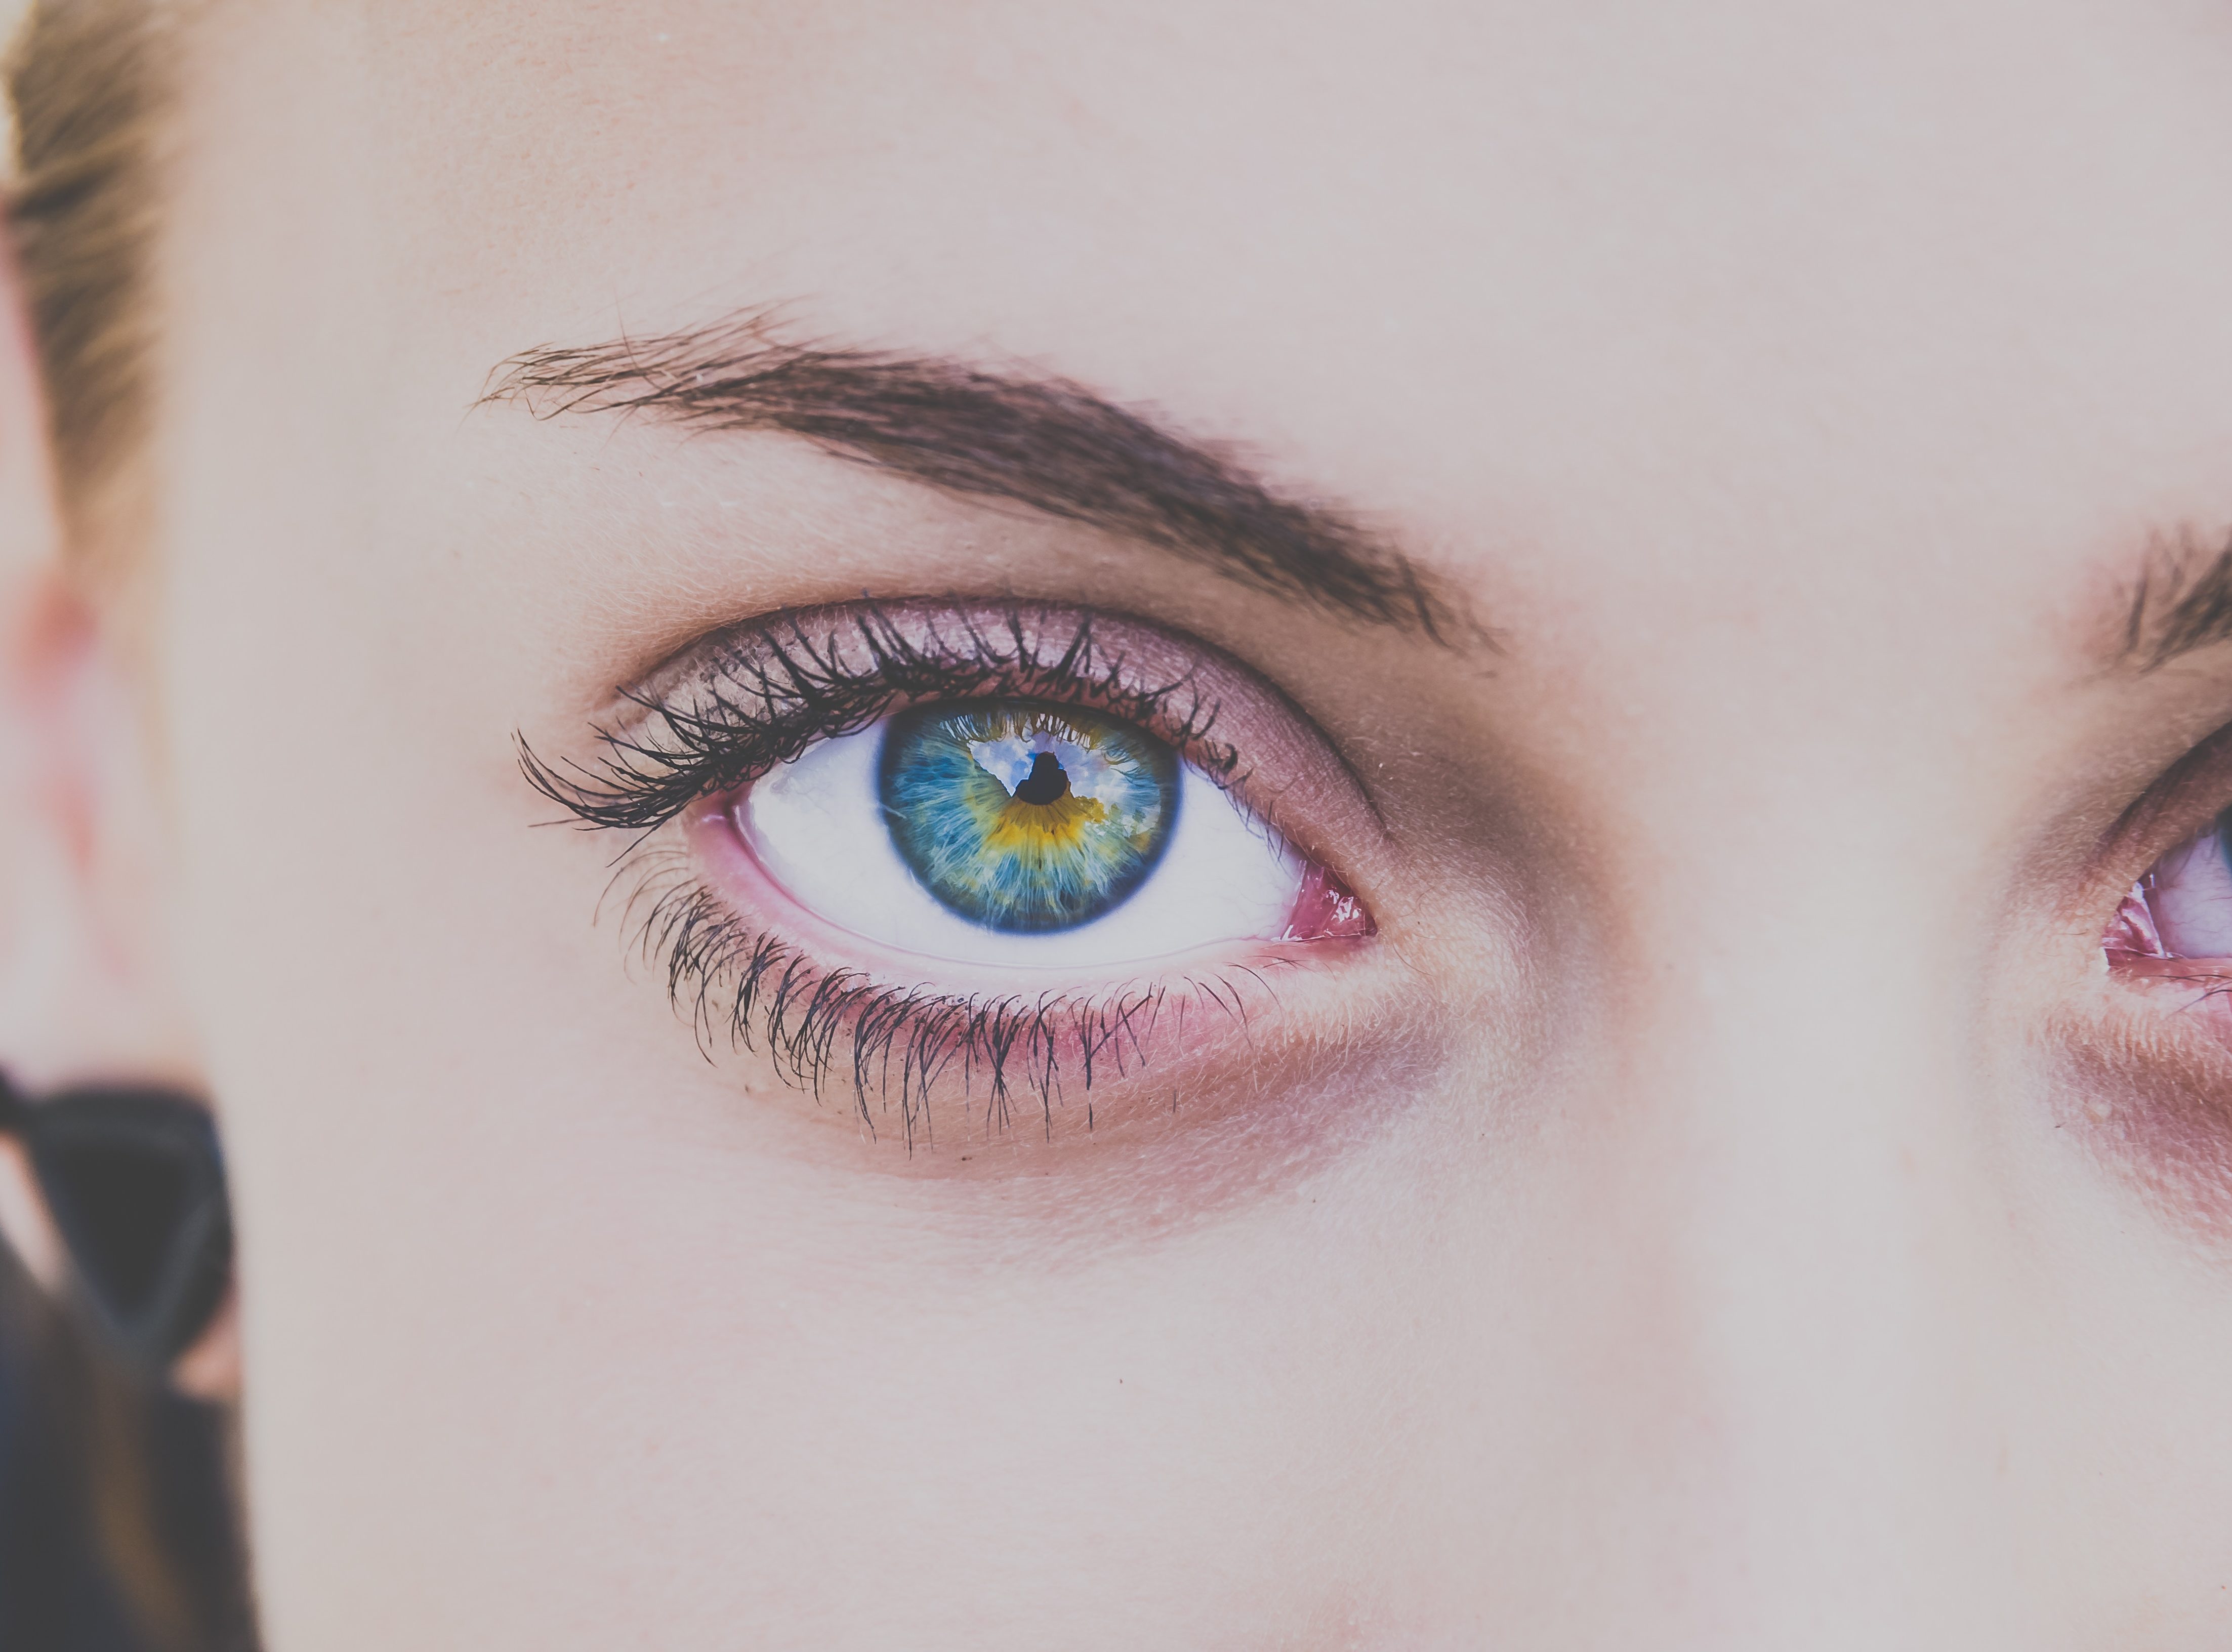 Ruim een ik ben ziek Mensen met blauwe ogen hebben een fascinerende fysieke eigenschap